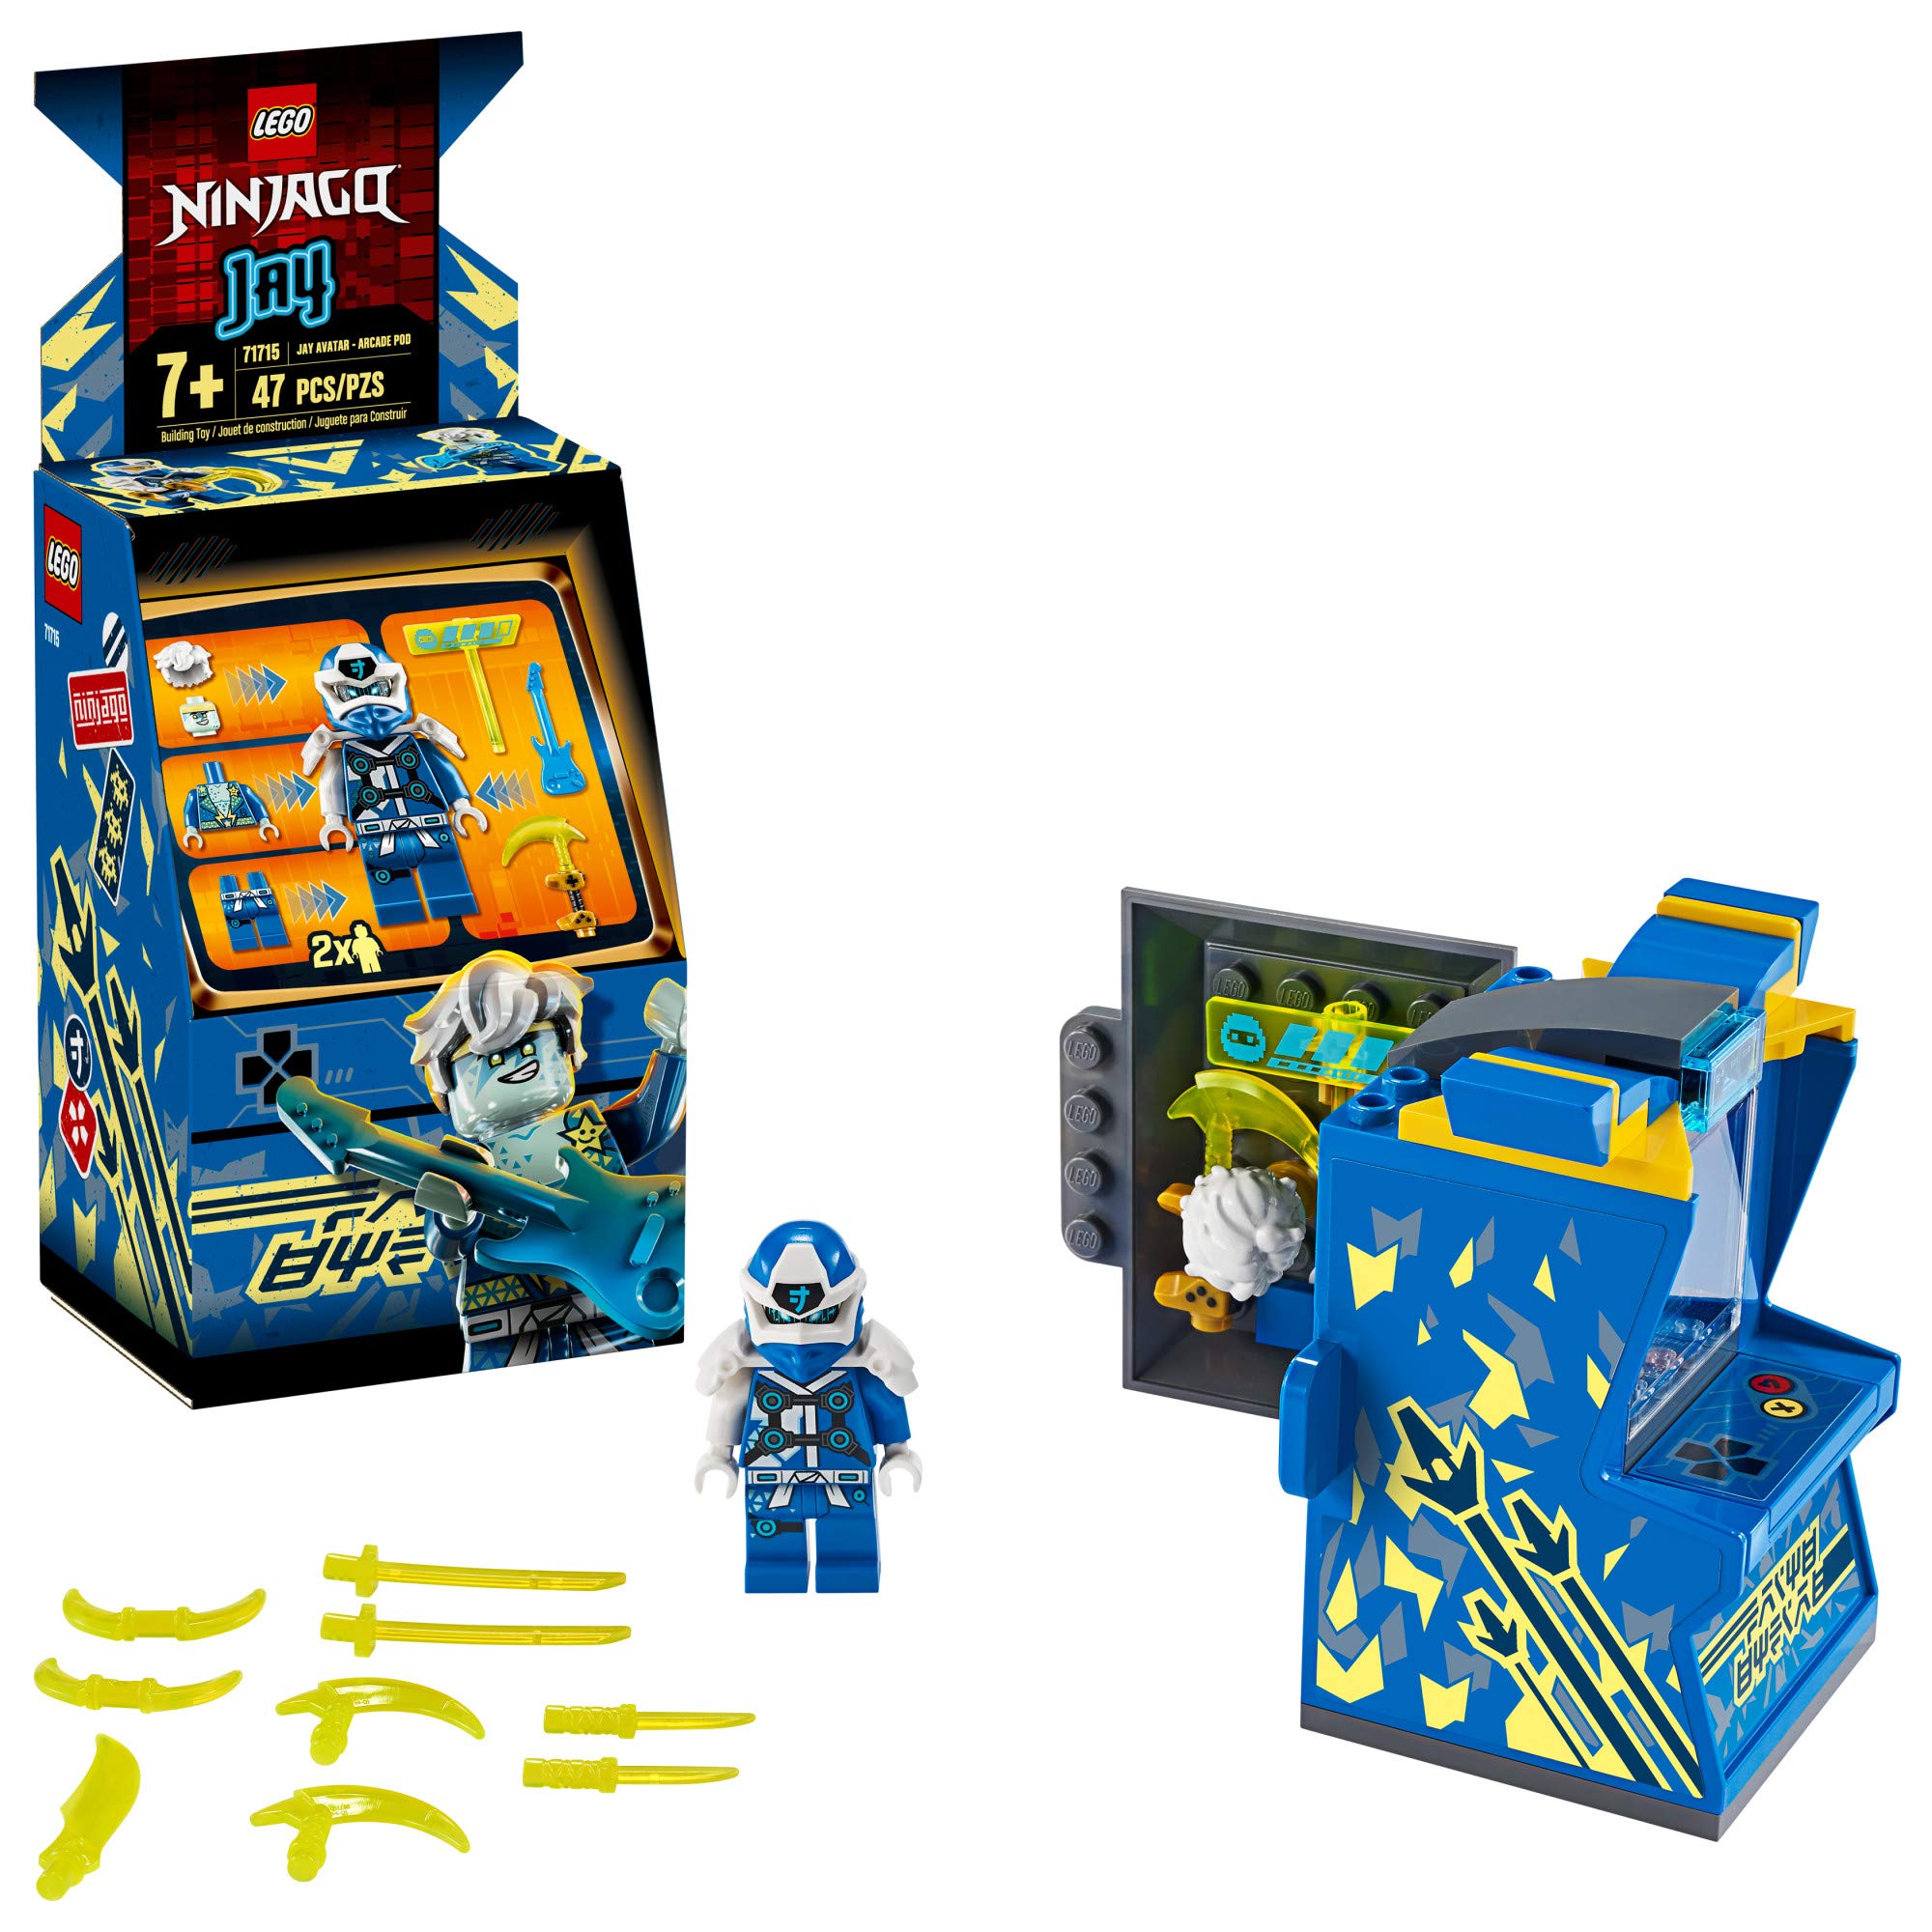 LEGO NINJAGO Jay-avatar - Arcade Pod 71715 Máy Mini Arcade J-avatar là lựa chọn hoàn hảo cho những người yêu thích trò chơi điện tử và các siêu anh hùng từ vũ trụ NINJAGO. Với gói sản phẩm này, bạn có thể tận hưởng cảm giác như được nhập vai vào thế giới ảo của J-avatar và đánh bại kẻ thù.